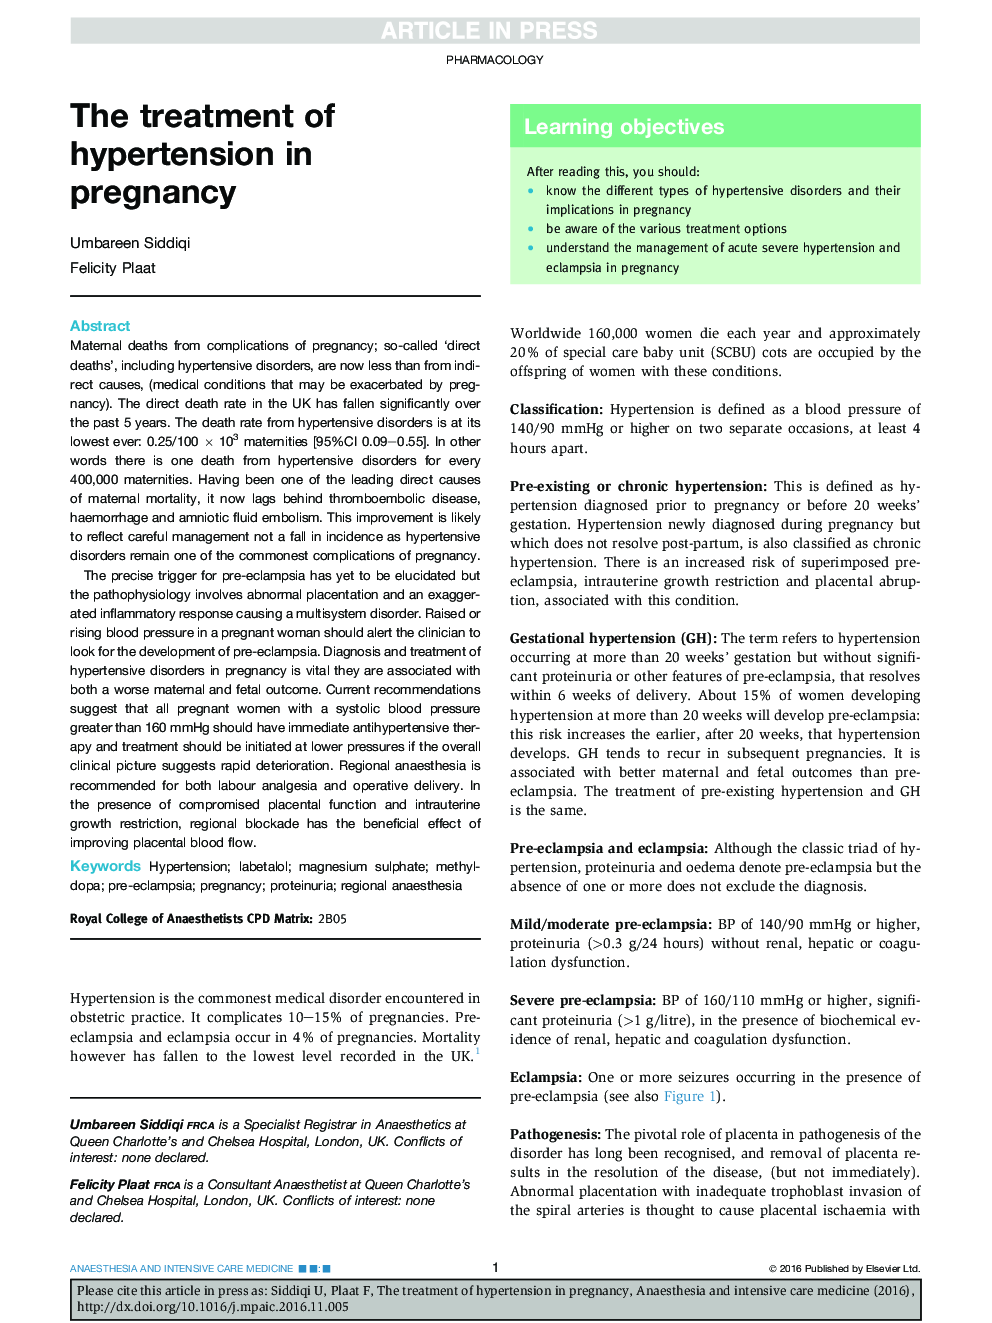 درمان فشارخون در حاملگی 